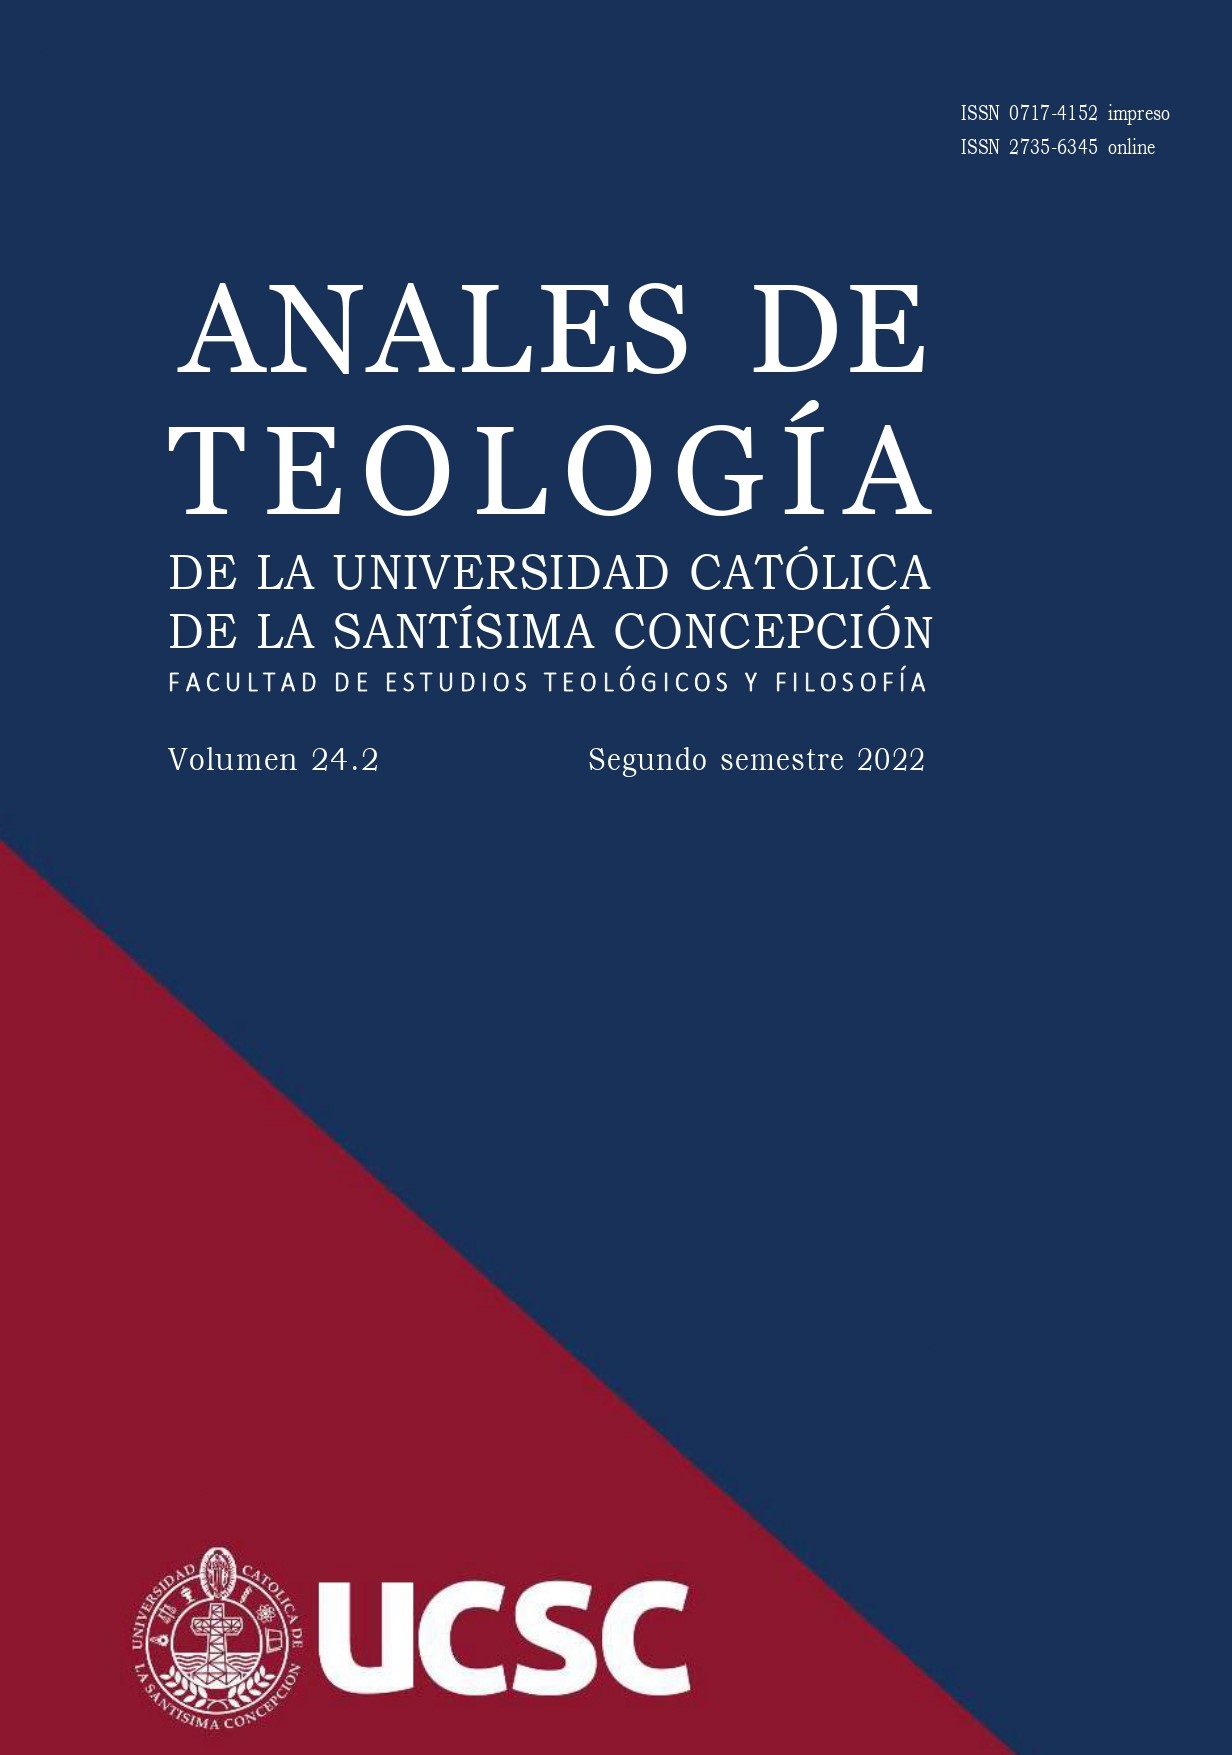 					View Vol. 15 No. 1 (2013): Anales de Teología | Enero - Junio 2013
				